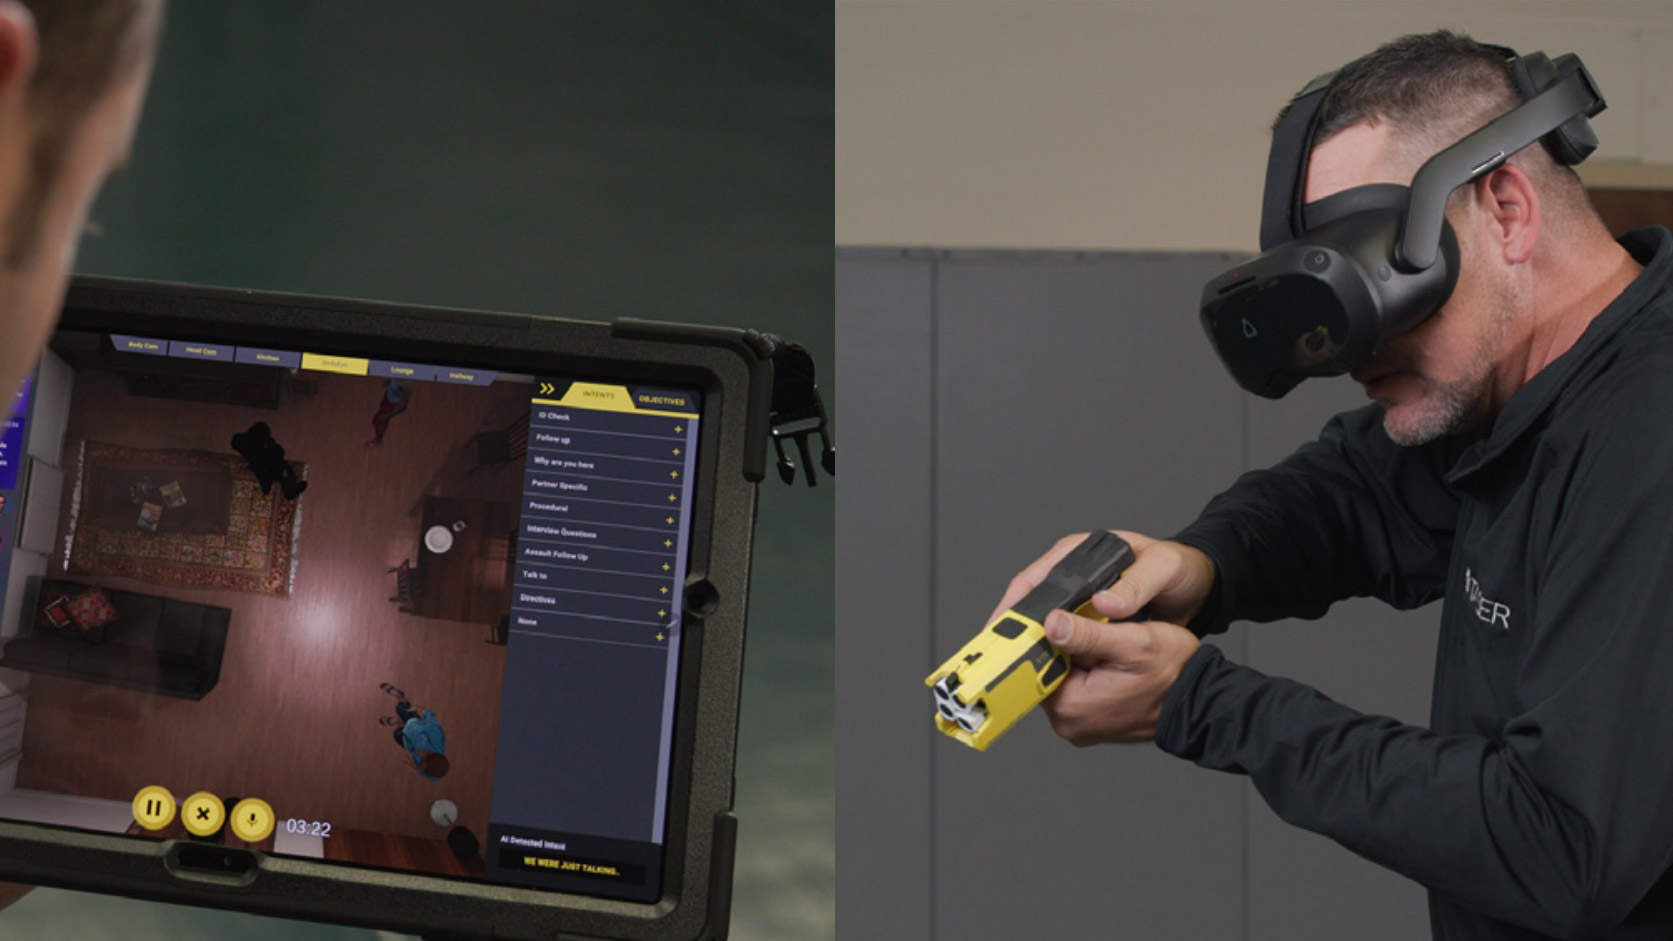 Maker of the Taser Acquires VR Studio to Bolster VR Police Training